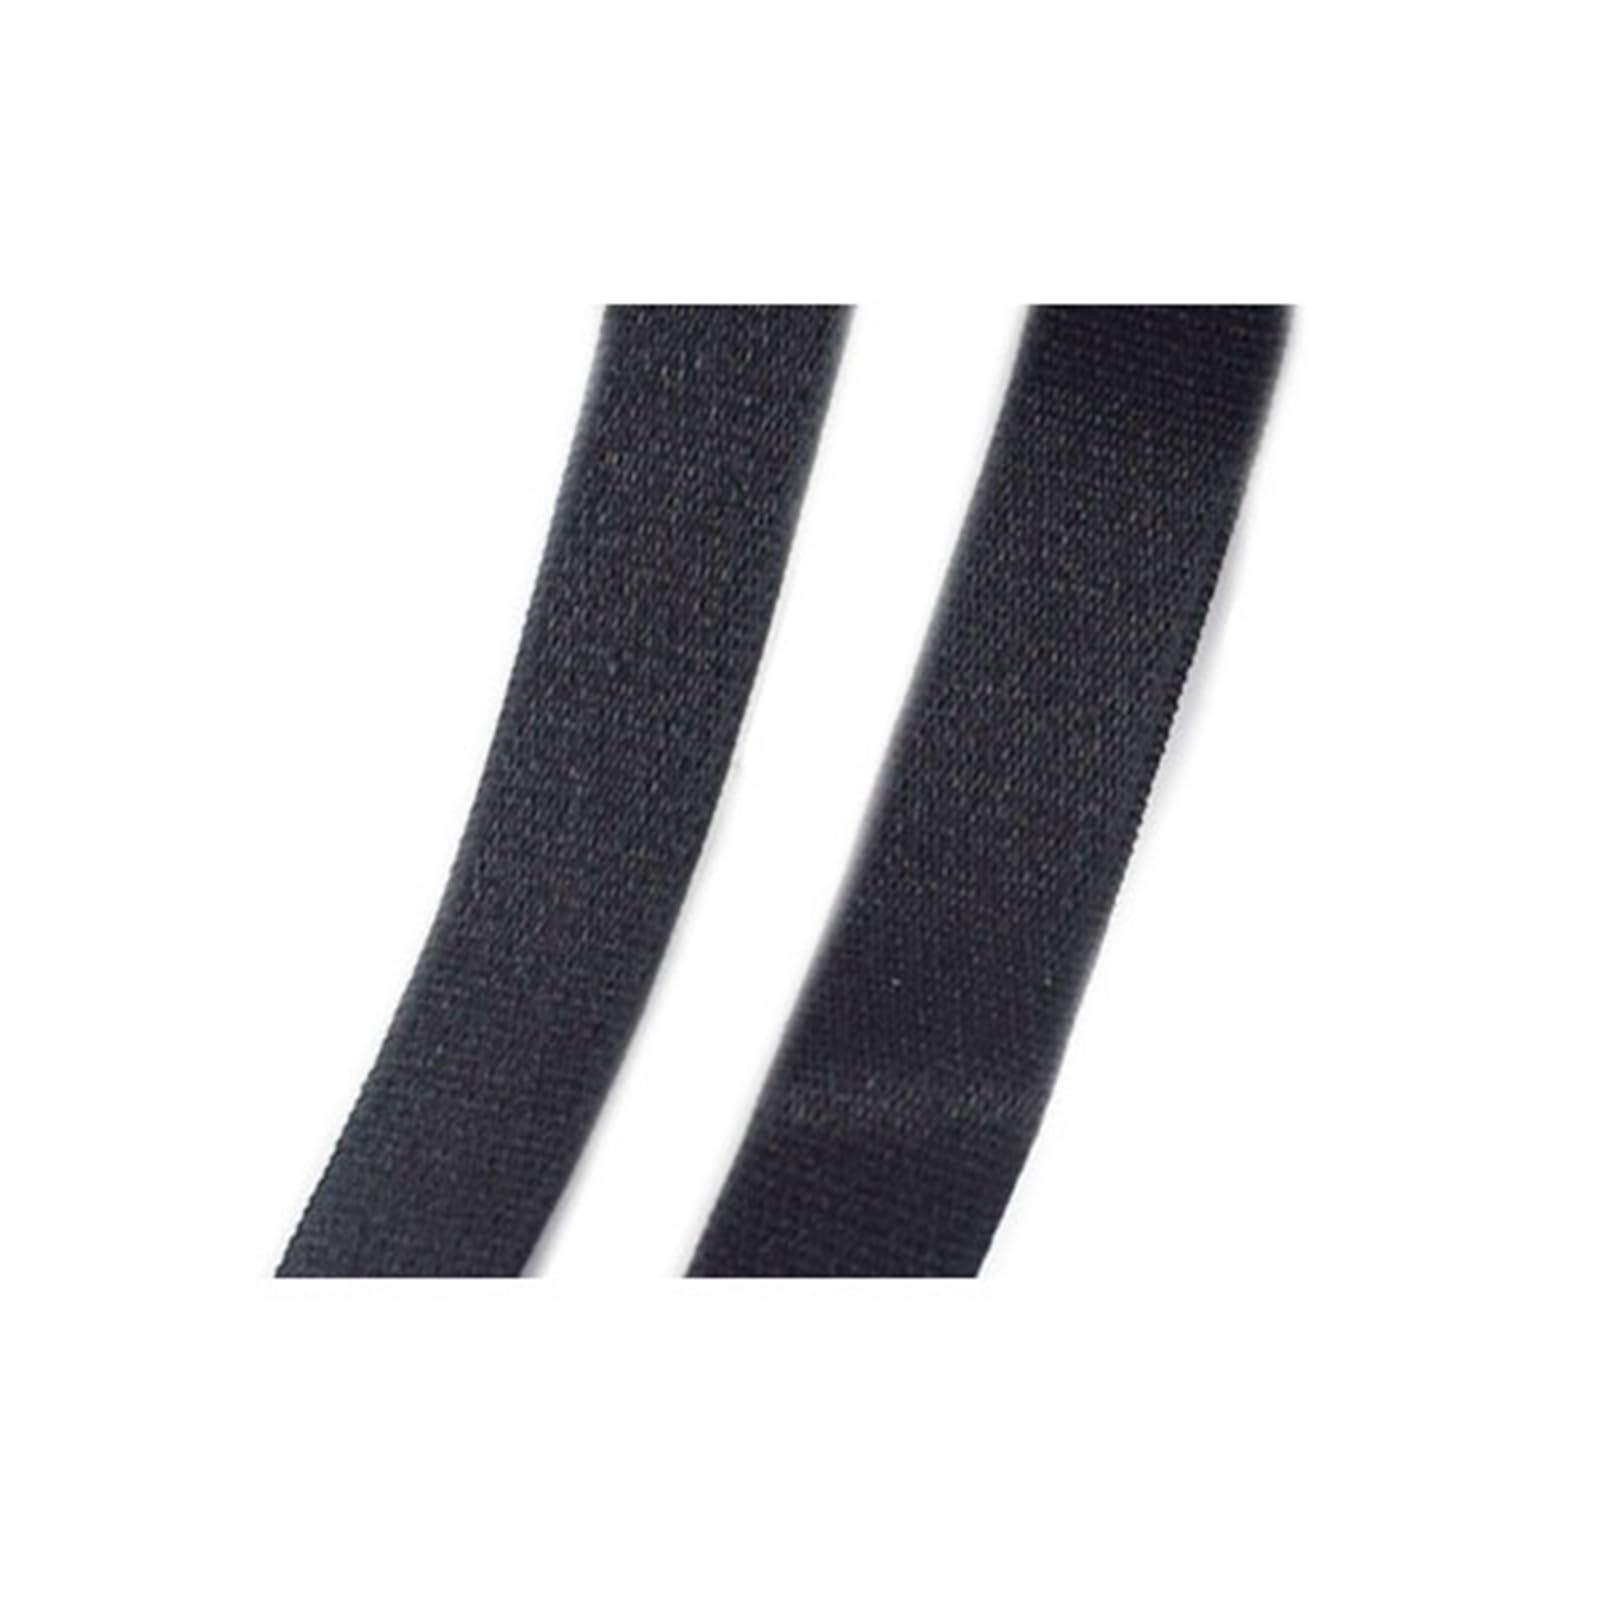 WORKSDUO 6-40mm Elastizbänder-Gurtnähe elastische Bandbanden nähen, Dunkles Schwarz, Breite 18mm Länge 20m